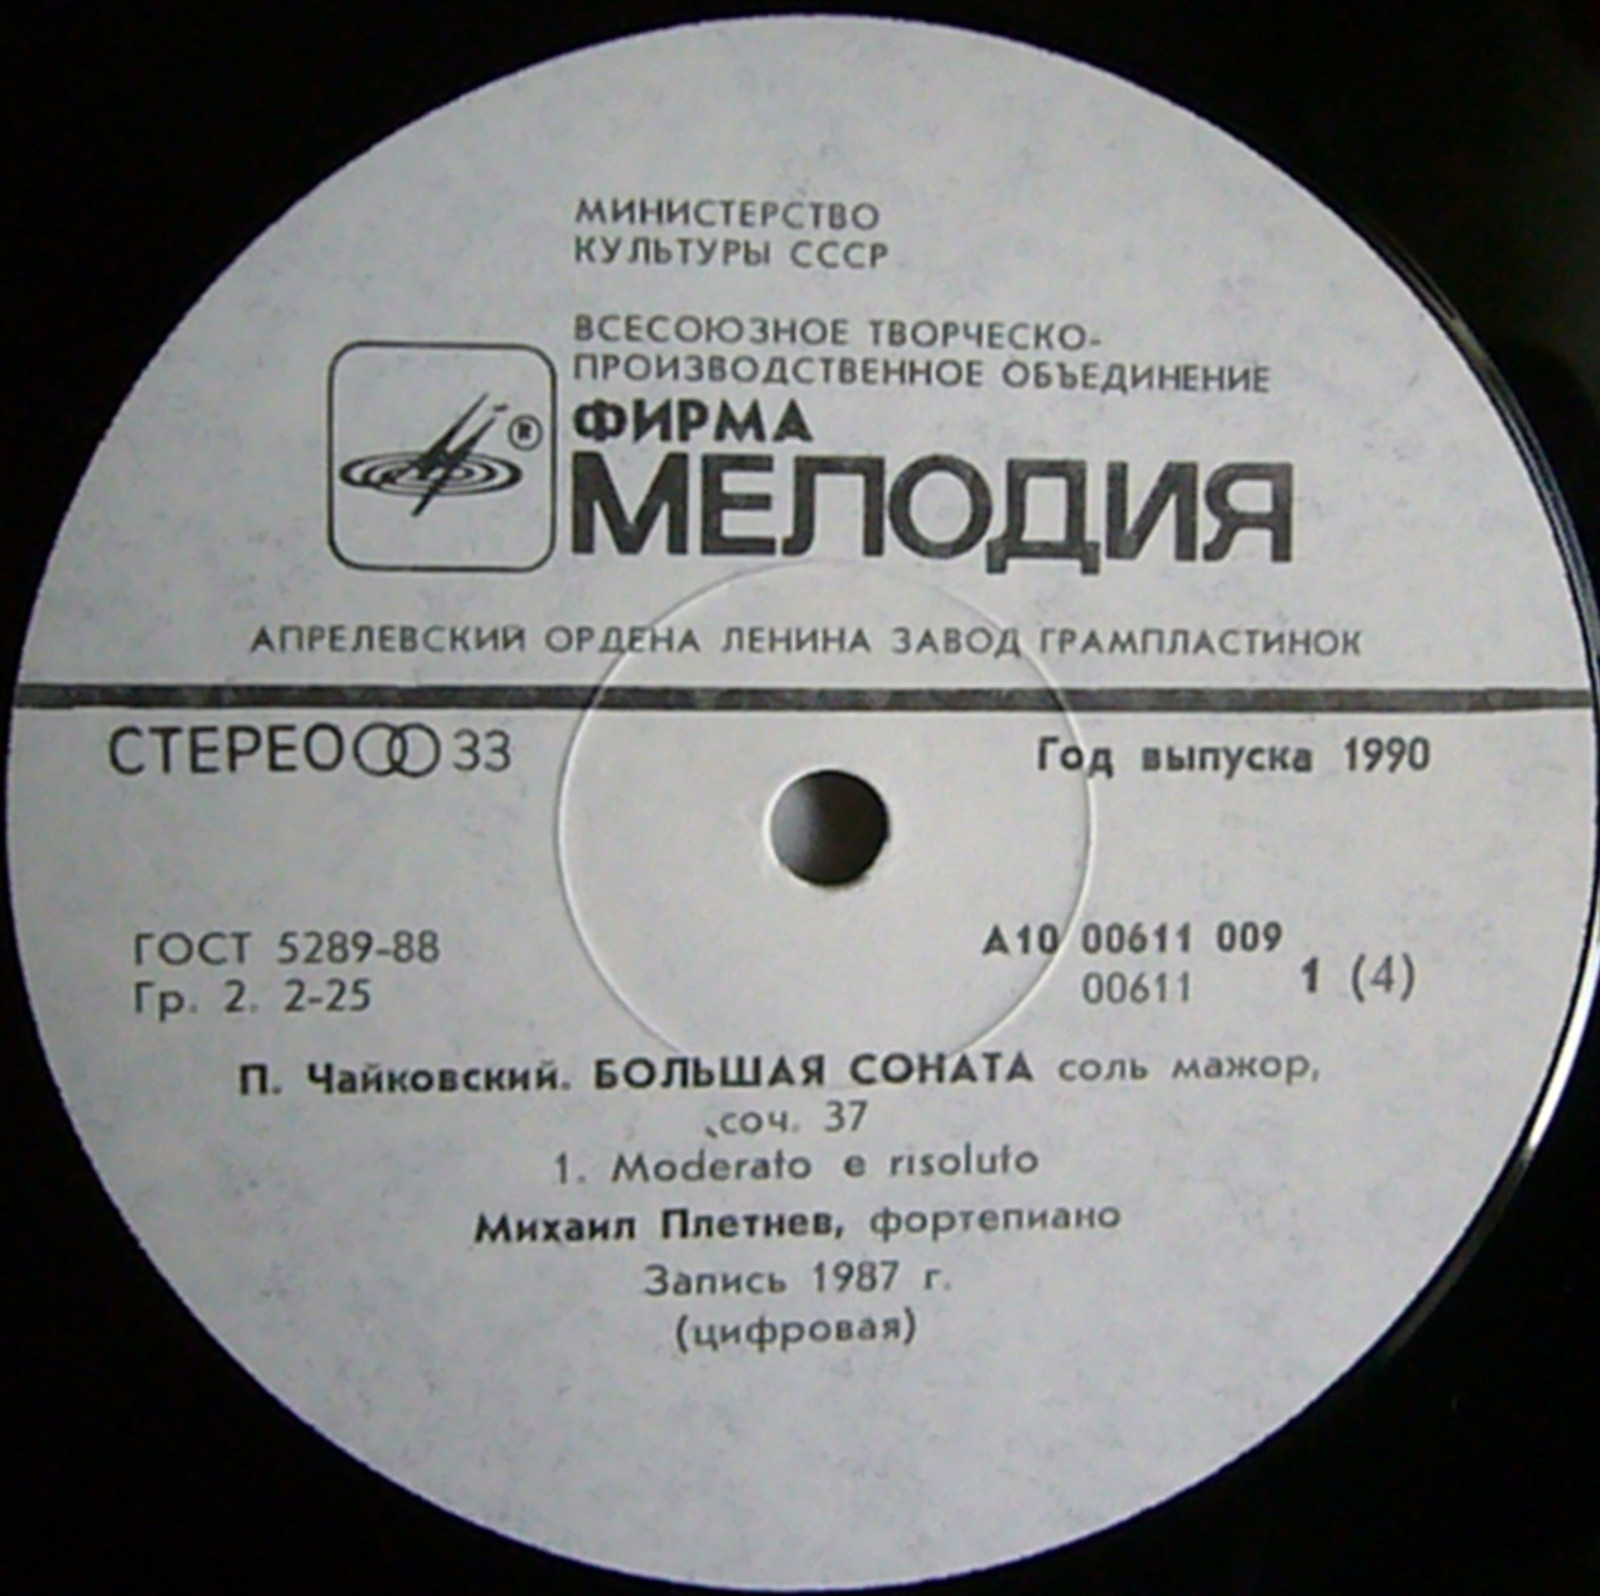 П. Чайковский: Большая соната. Детский альбом (М. Плетнев, ф-но)